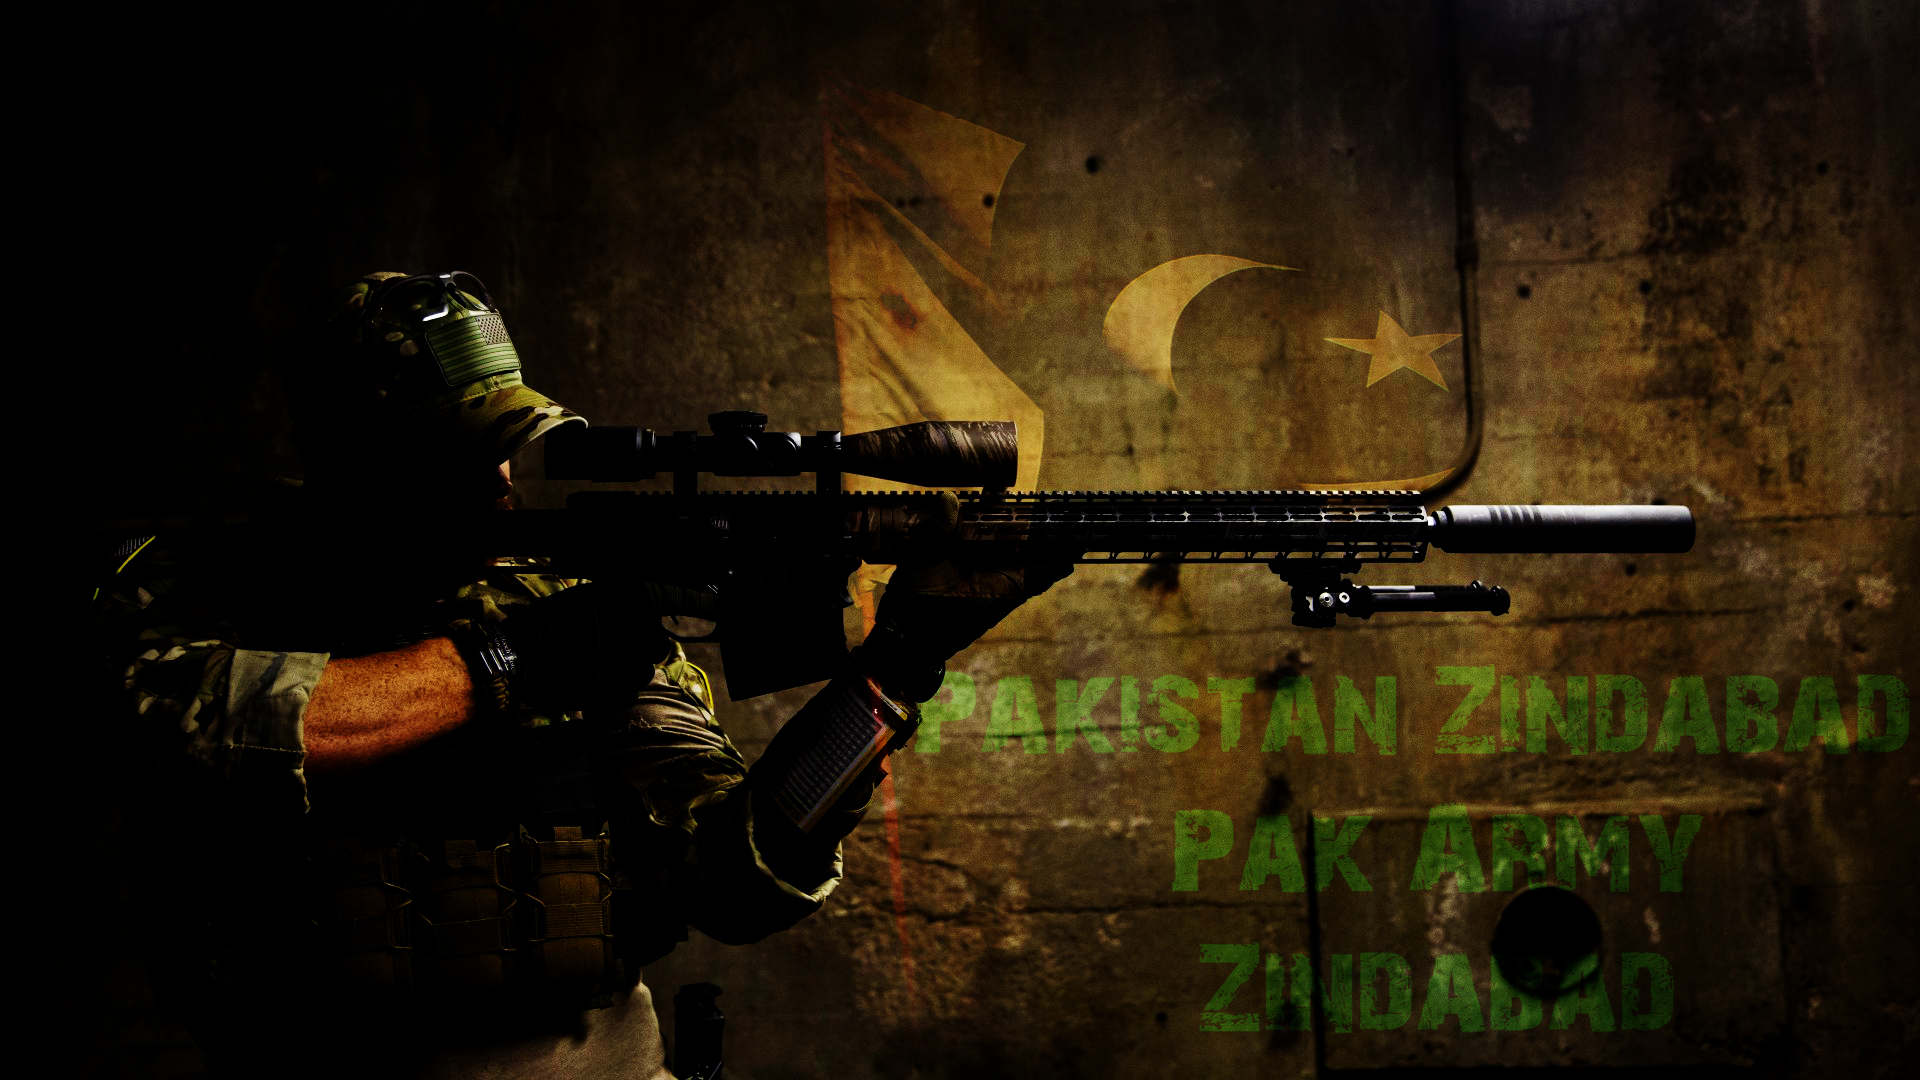 Скачать обои бесплатно Солдат, Армия, Пистолет, Военные, Винтовка, Пакистанская Армия картинка на рабочий стол ПК